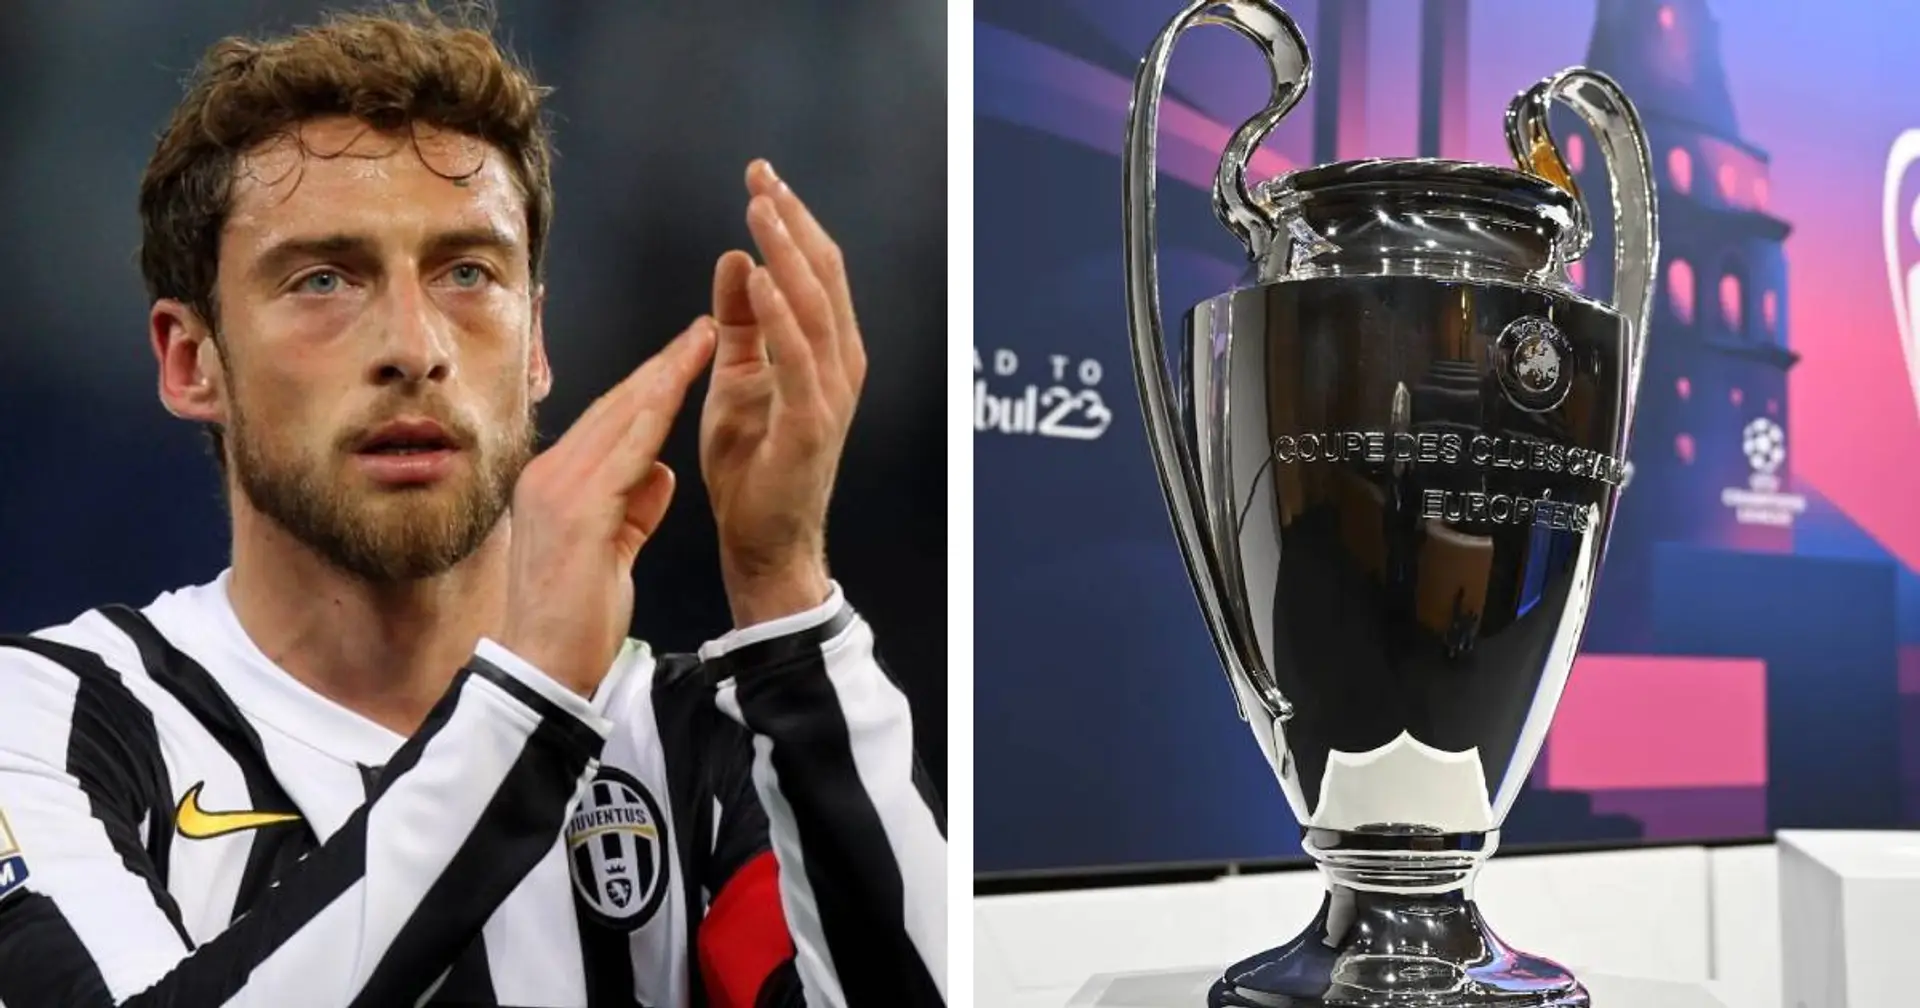 3 brevi notizie sulla Juventus passate in silenzio che potrebbero piacerti